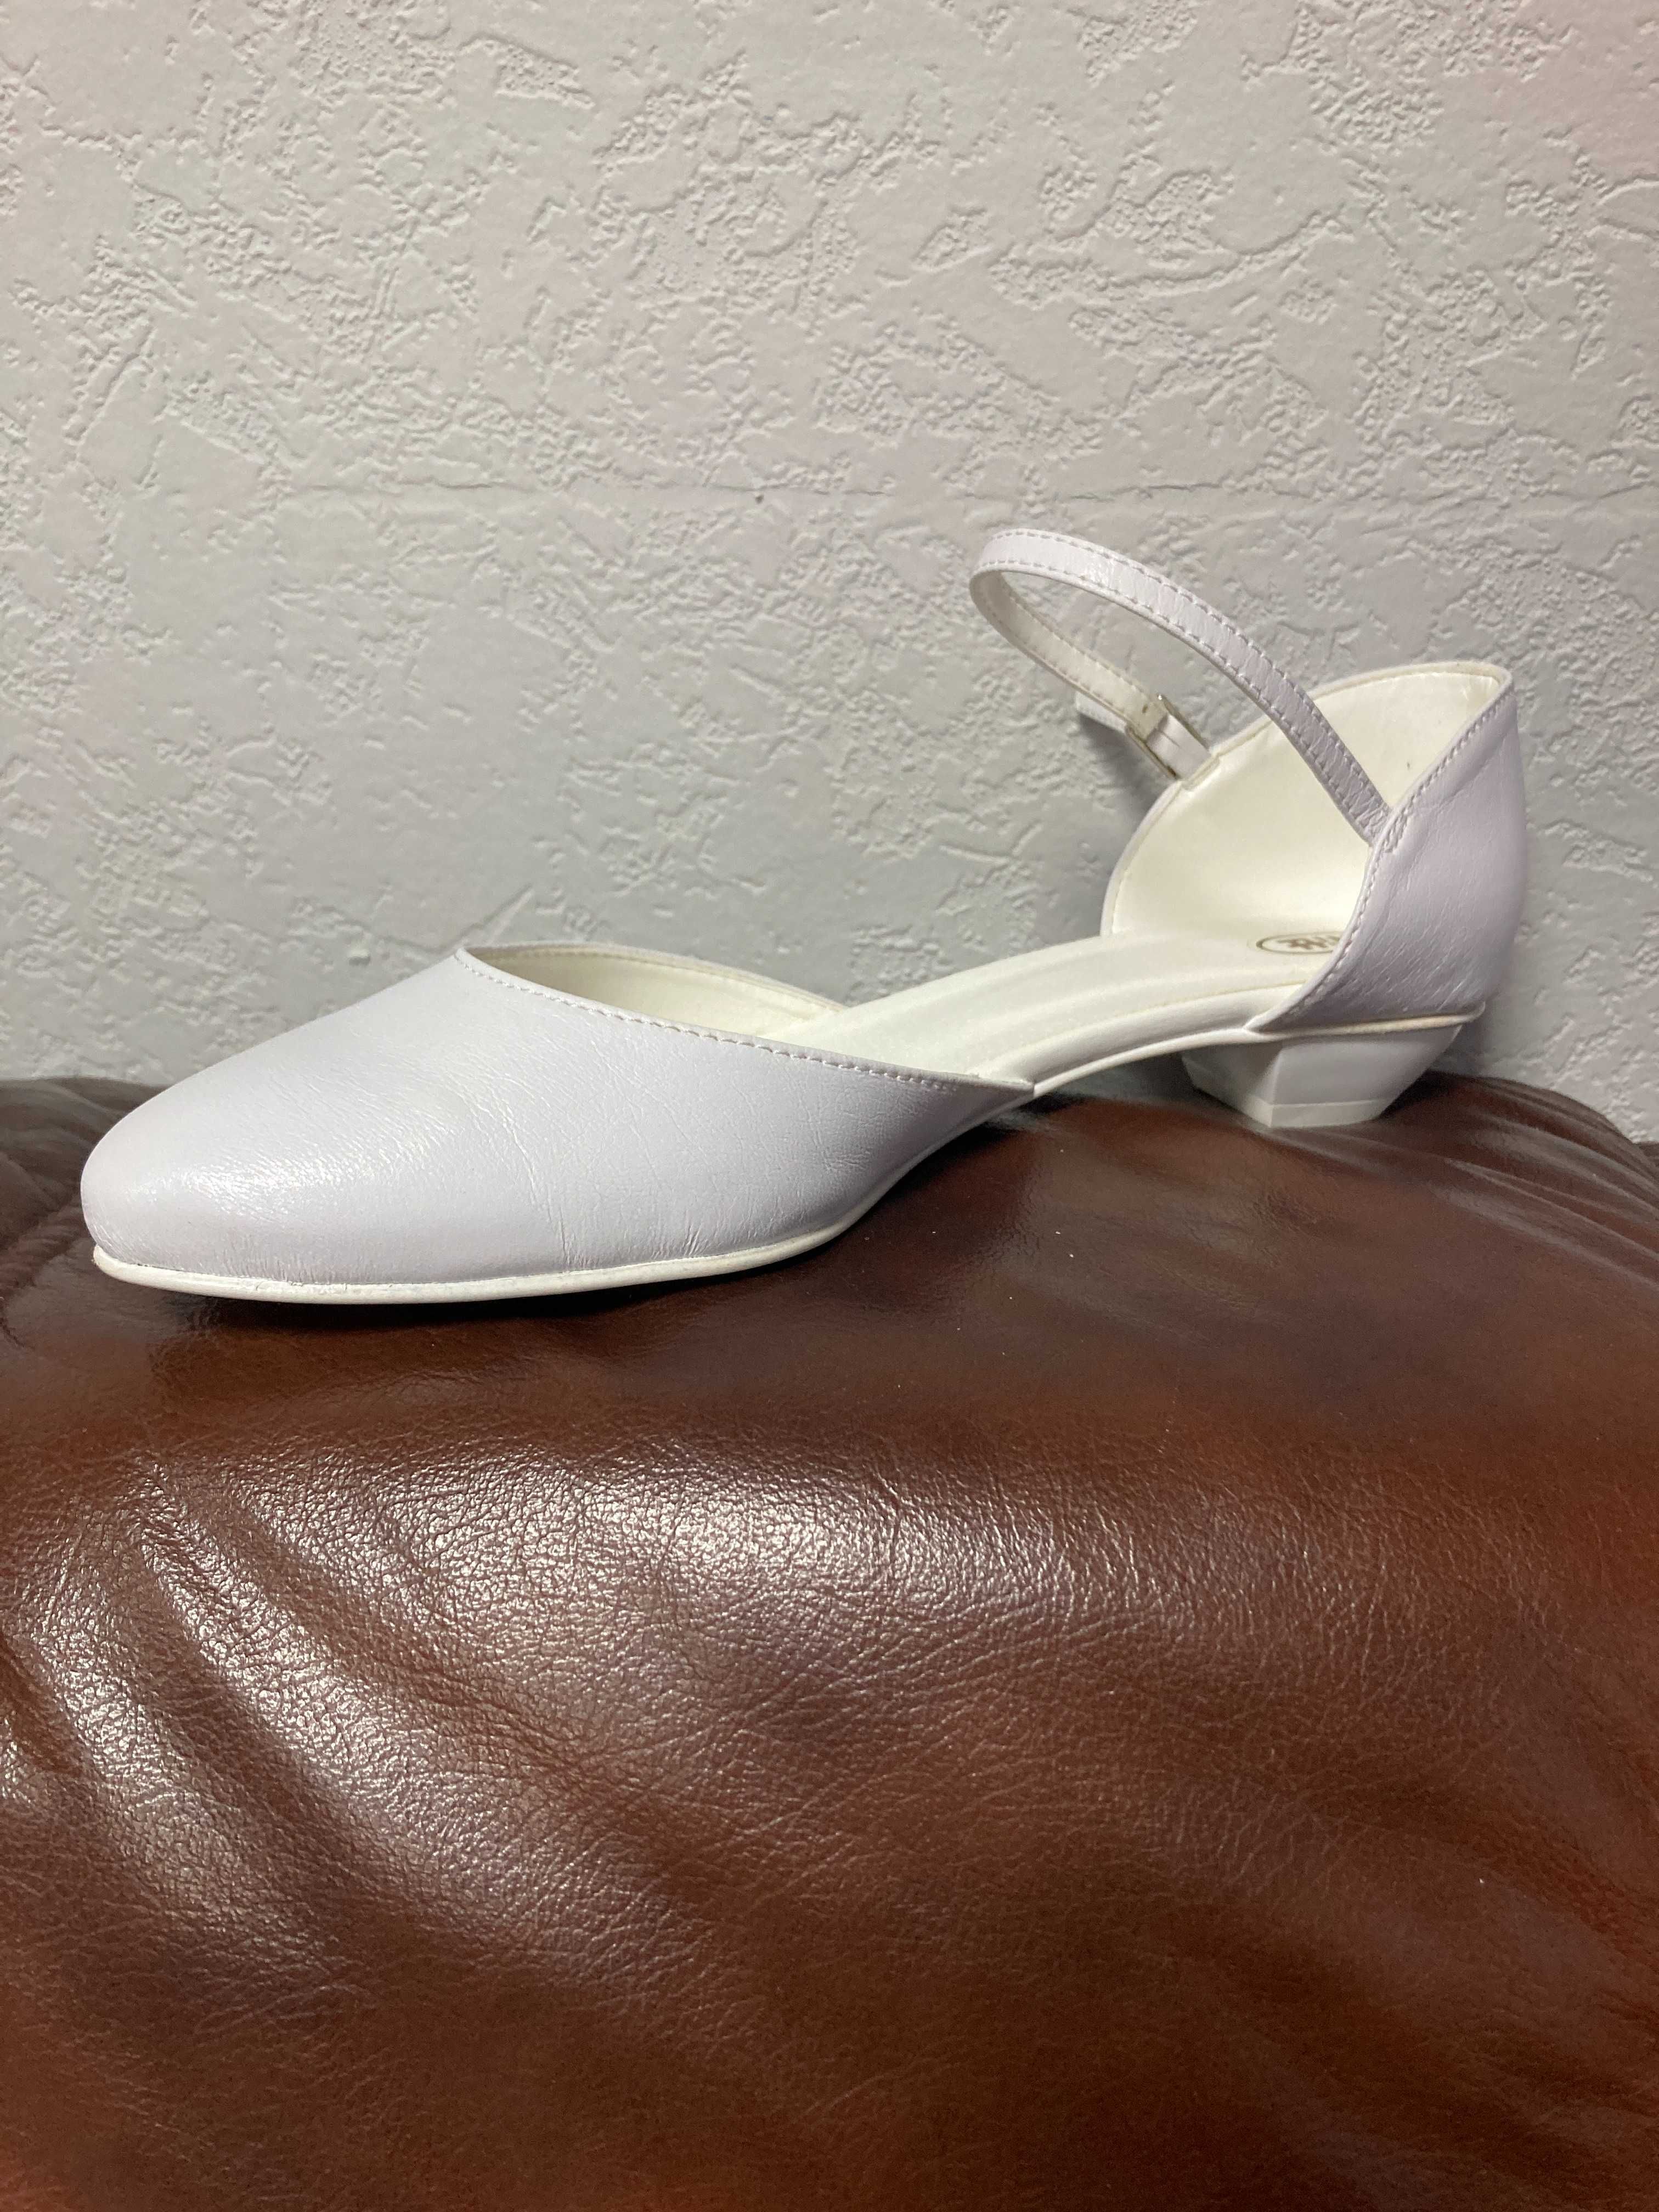 Nowe buty, czółenka białe r. 41, wys. 3 cm, wyprzedaż